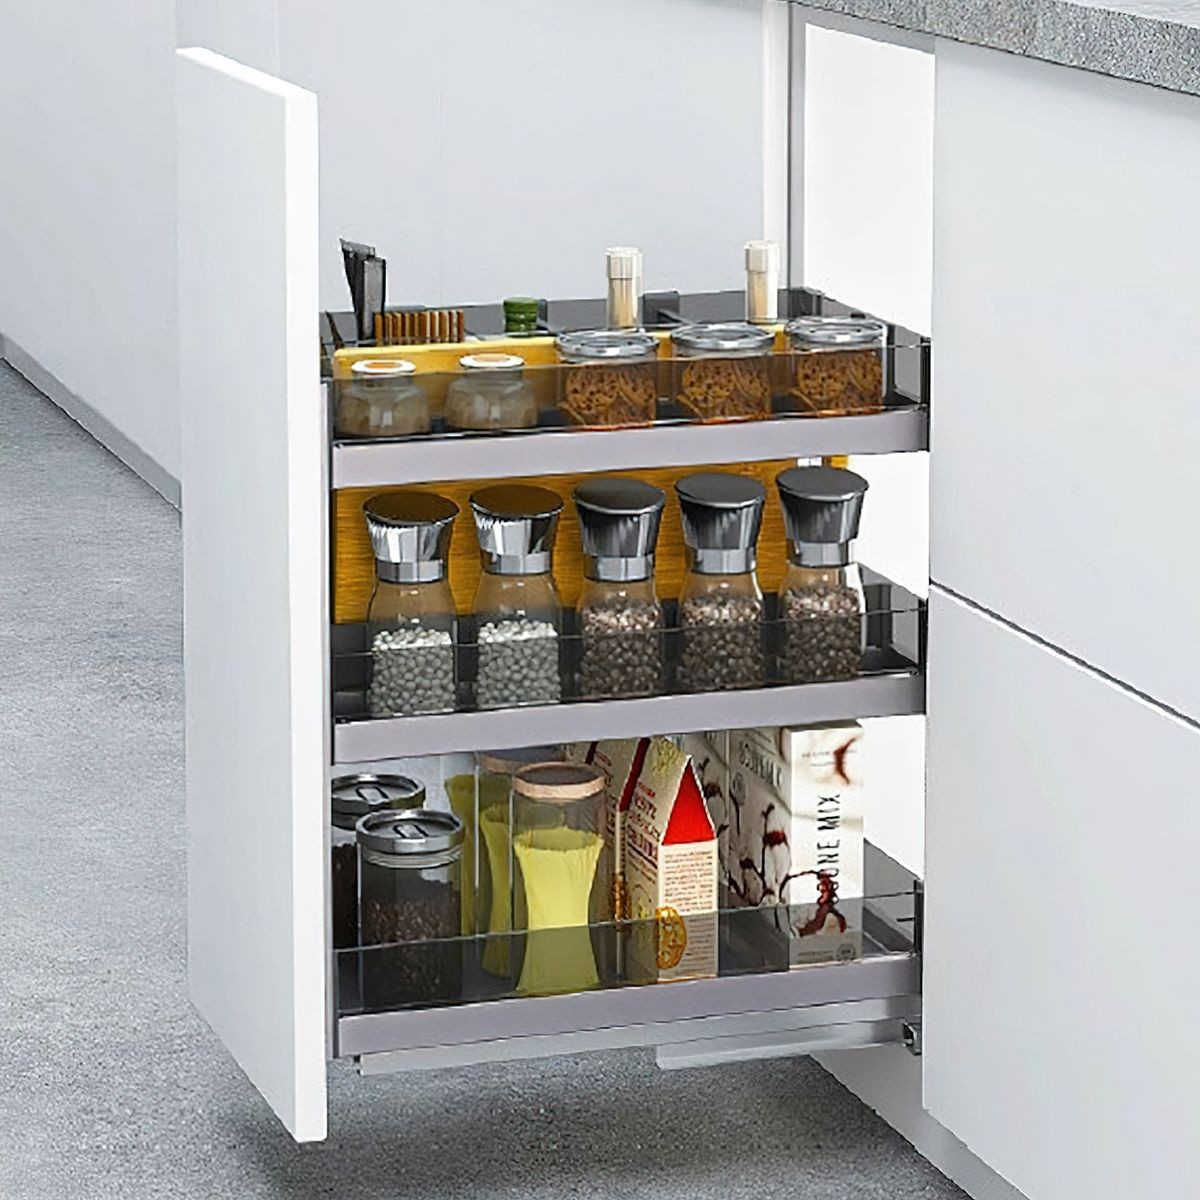 https://archipro.com.au/images/cdn-images/width=3840,quality=90/images/s1/product/pantry-systems/elite-pull-out-kitchen-cabinet-organiser-300mm-unbranded-1000x1000-min-1.jpg/eyJlZGl0cyI6W3sidHlwZSI6InpwY2YiLCJvcHRpb25zIjp7ImJveFdpZHRoIjoxMjAwLCJib3hIZWlnaHQiOjEyMDAsInpvb21XaWR0aCI6MTIwMCwic2Nyb2xsUG9zWCI6NTAsInNjcm9sbFBvc1kiOjUwLCJiYWNrZ3JvdW5kIjoiI2U4ZTllYiIsImZpbHRlciI6MH19LHsidHlwZSI6ImZsYXR0ZW4iLCJvcHRpb25zIjp7ImJhY2tncm91bmQiOiIjZmZmZmZmIn19XSwicXVhbGl0eSI6ODcsInRvRm9ybWF0IjoianBnIn0=